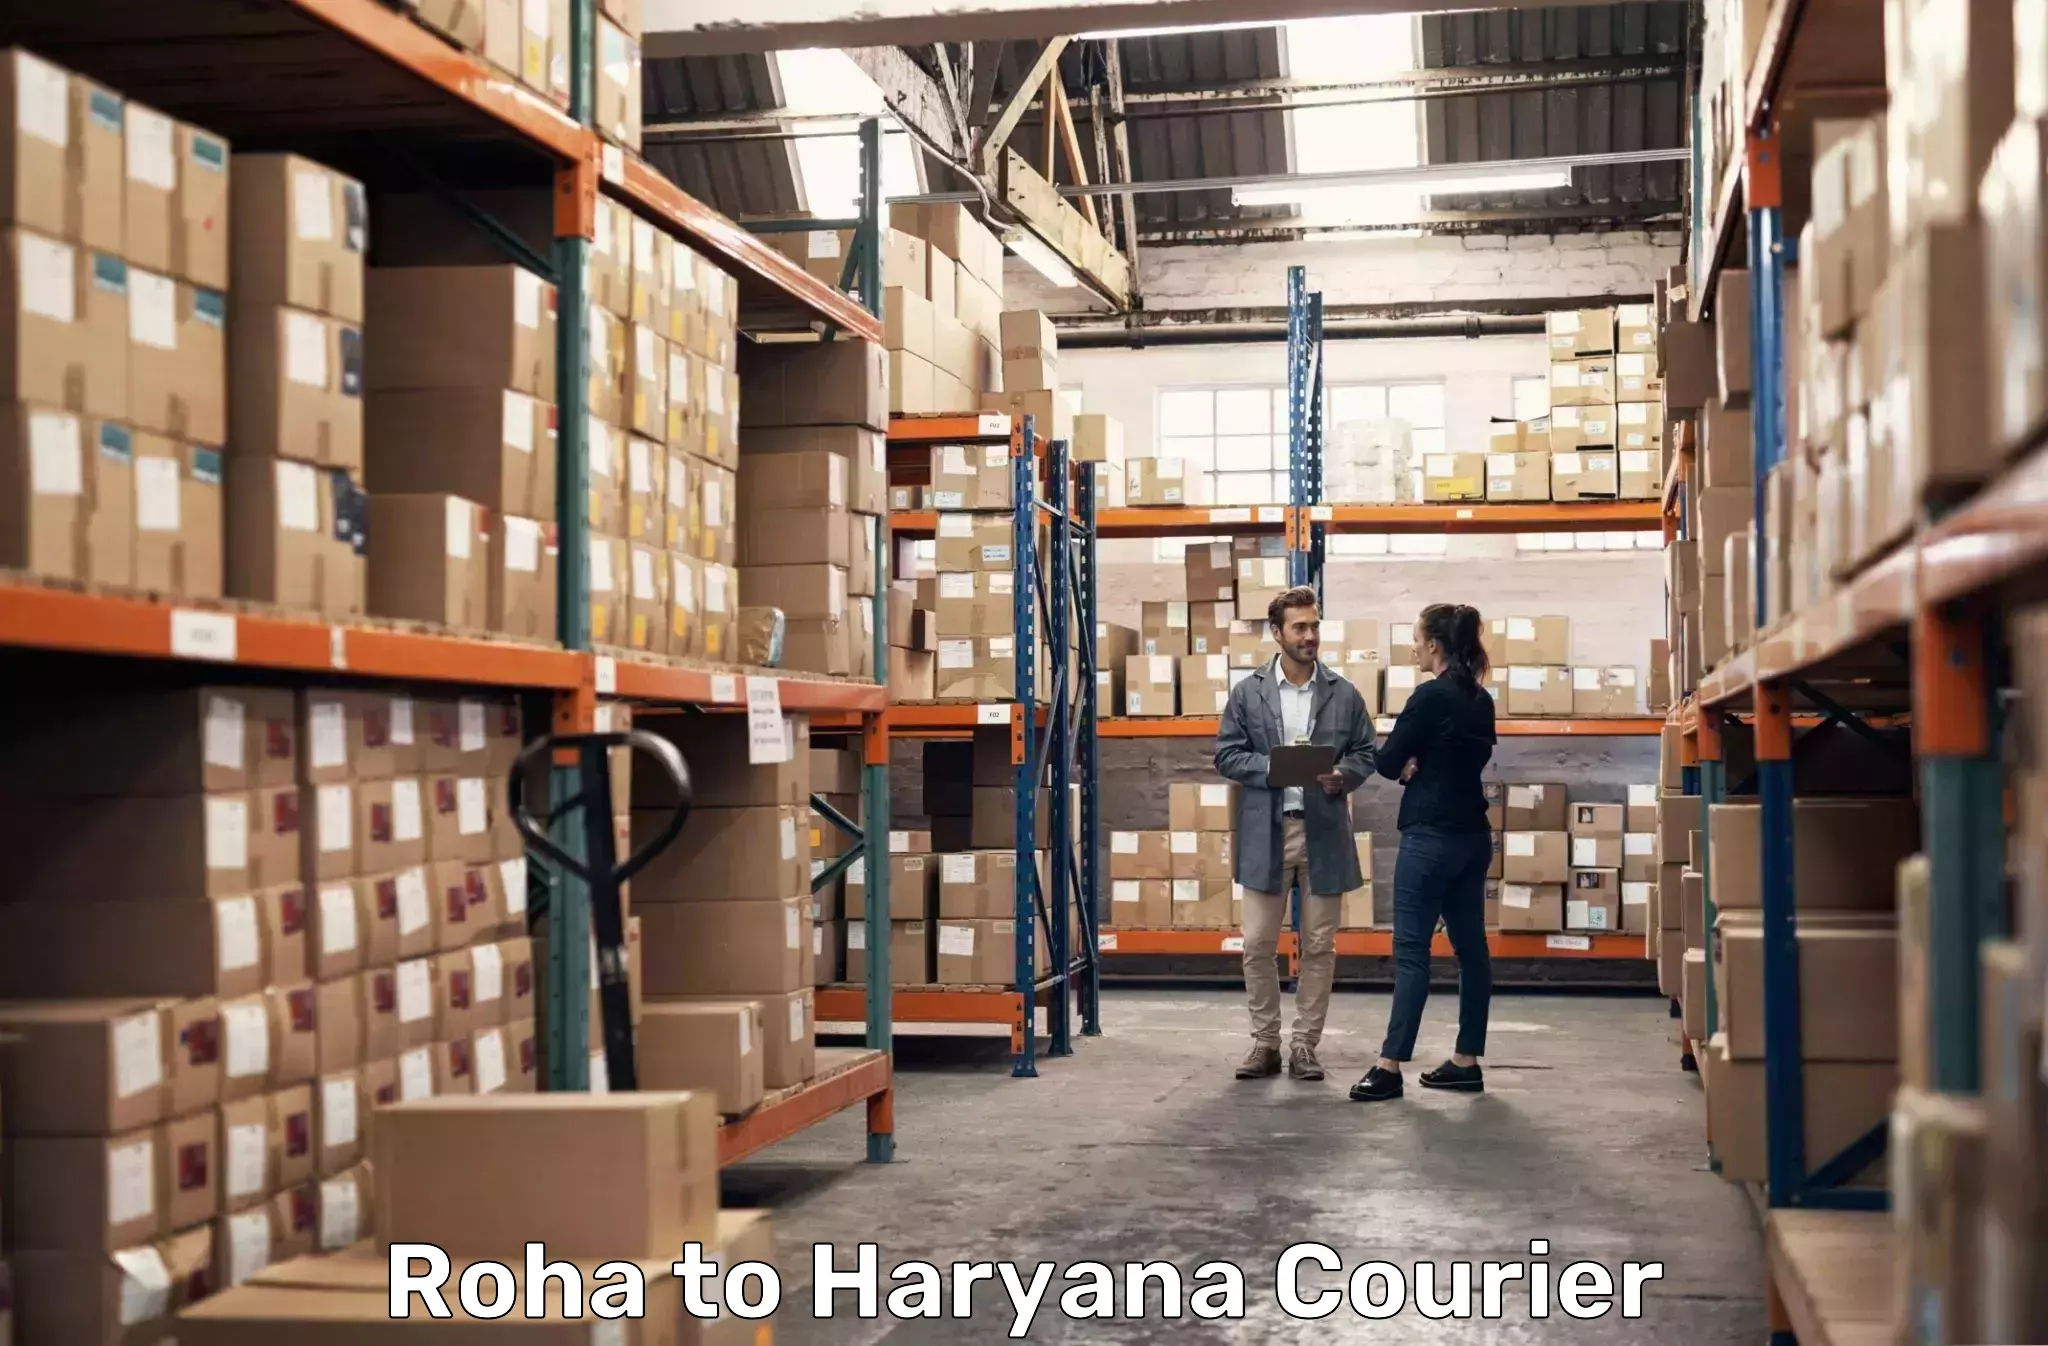 Professional courier handling Roha to Kurukshetra